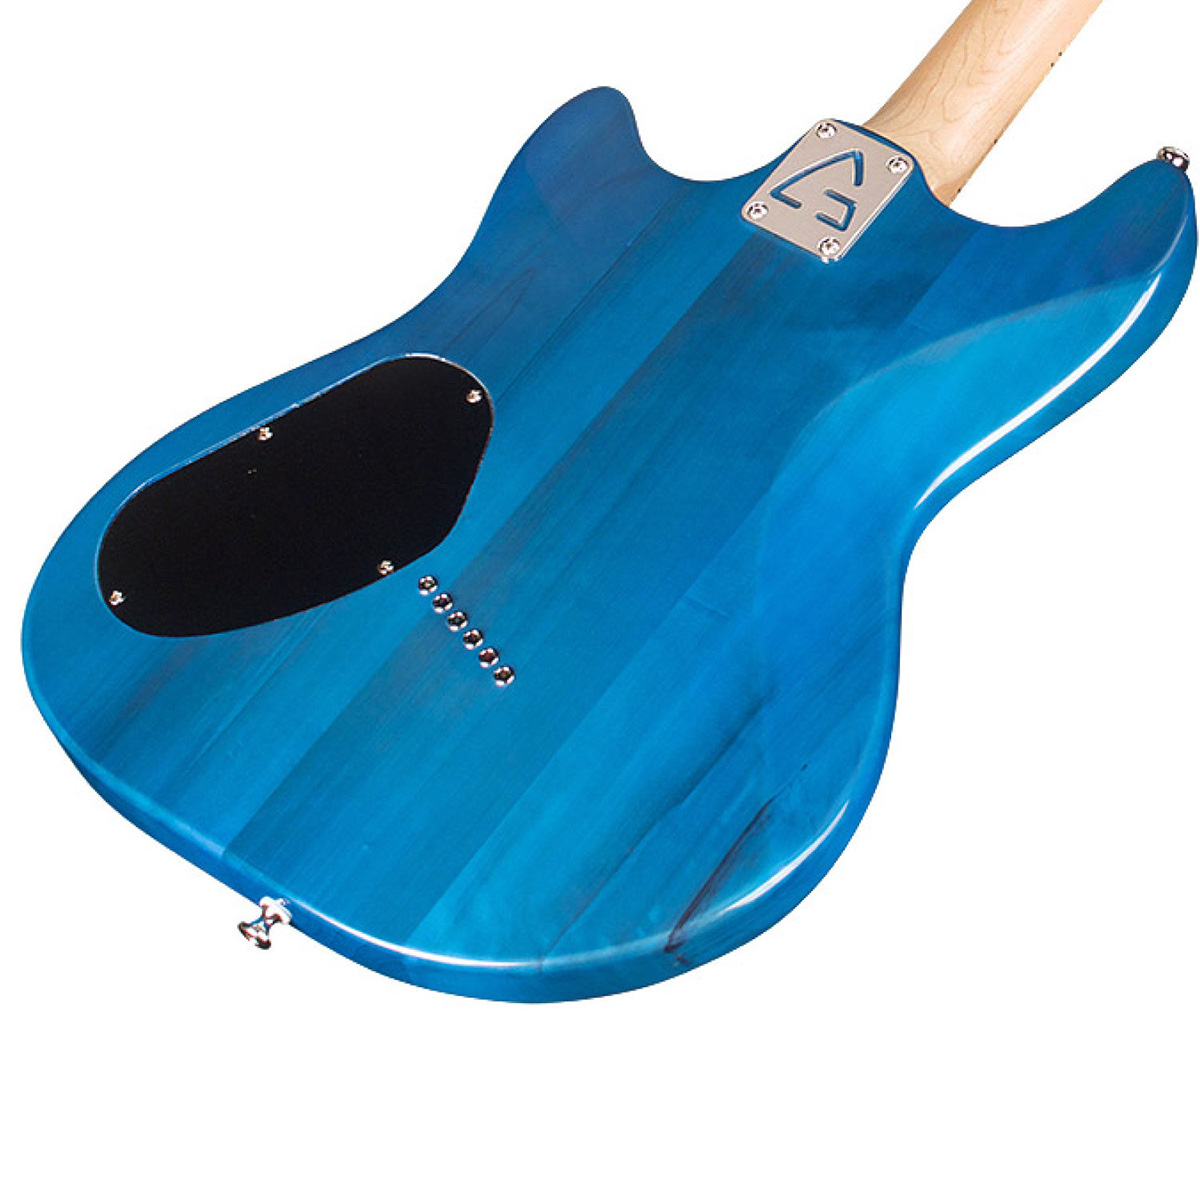 GUILD surfliner catalina blue B級特価